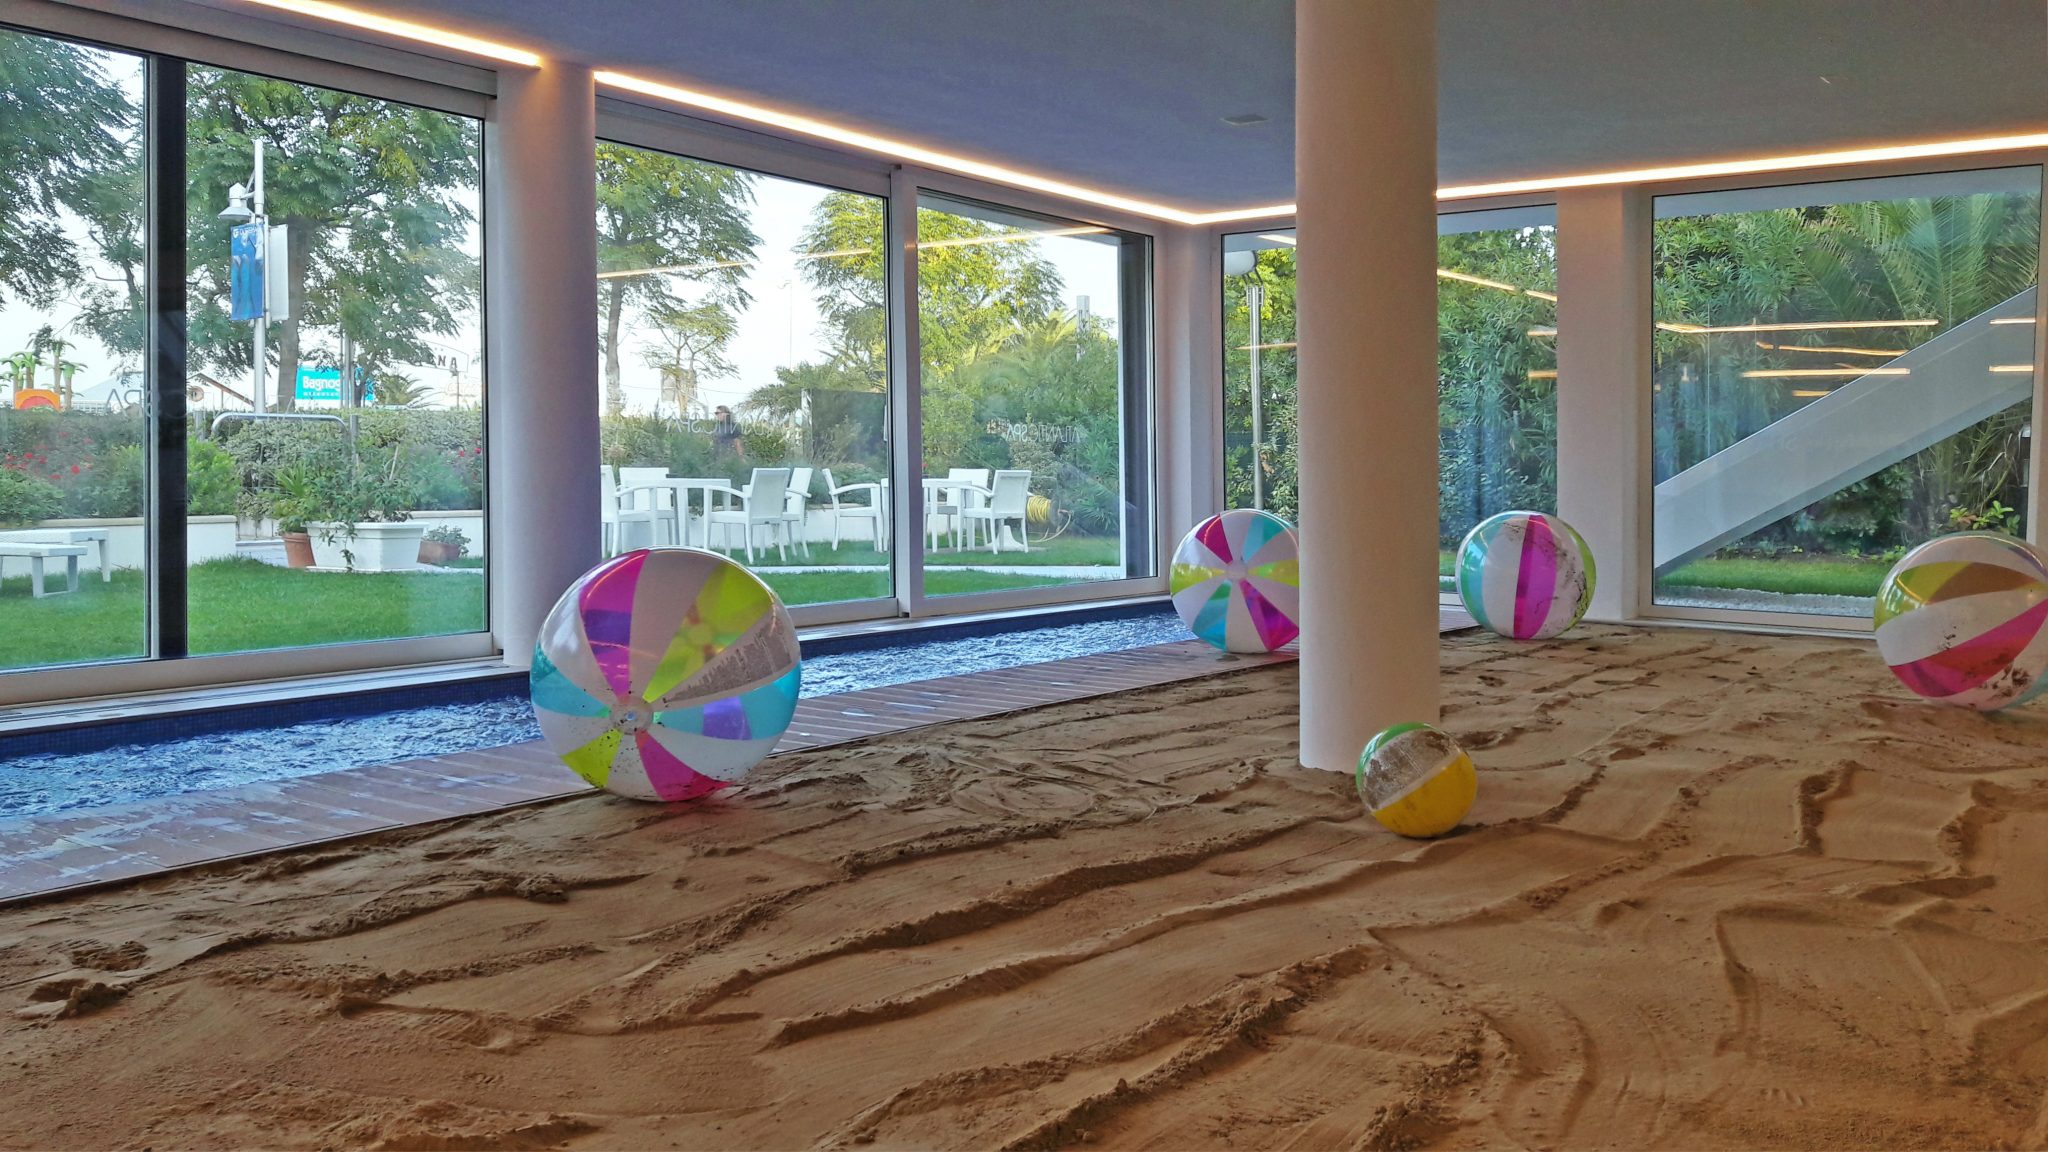 Nell'Atlantic Spa di Riccione, l'elemento di sopresa, l'unicità, è la Spiaggia d'Inverno, all'interno dell'albergo, con sabbia vera, piccola piscina (per i bambini) e lampade a raggi infrarossi.